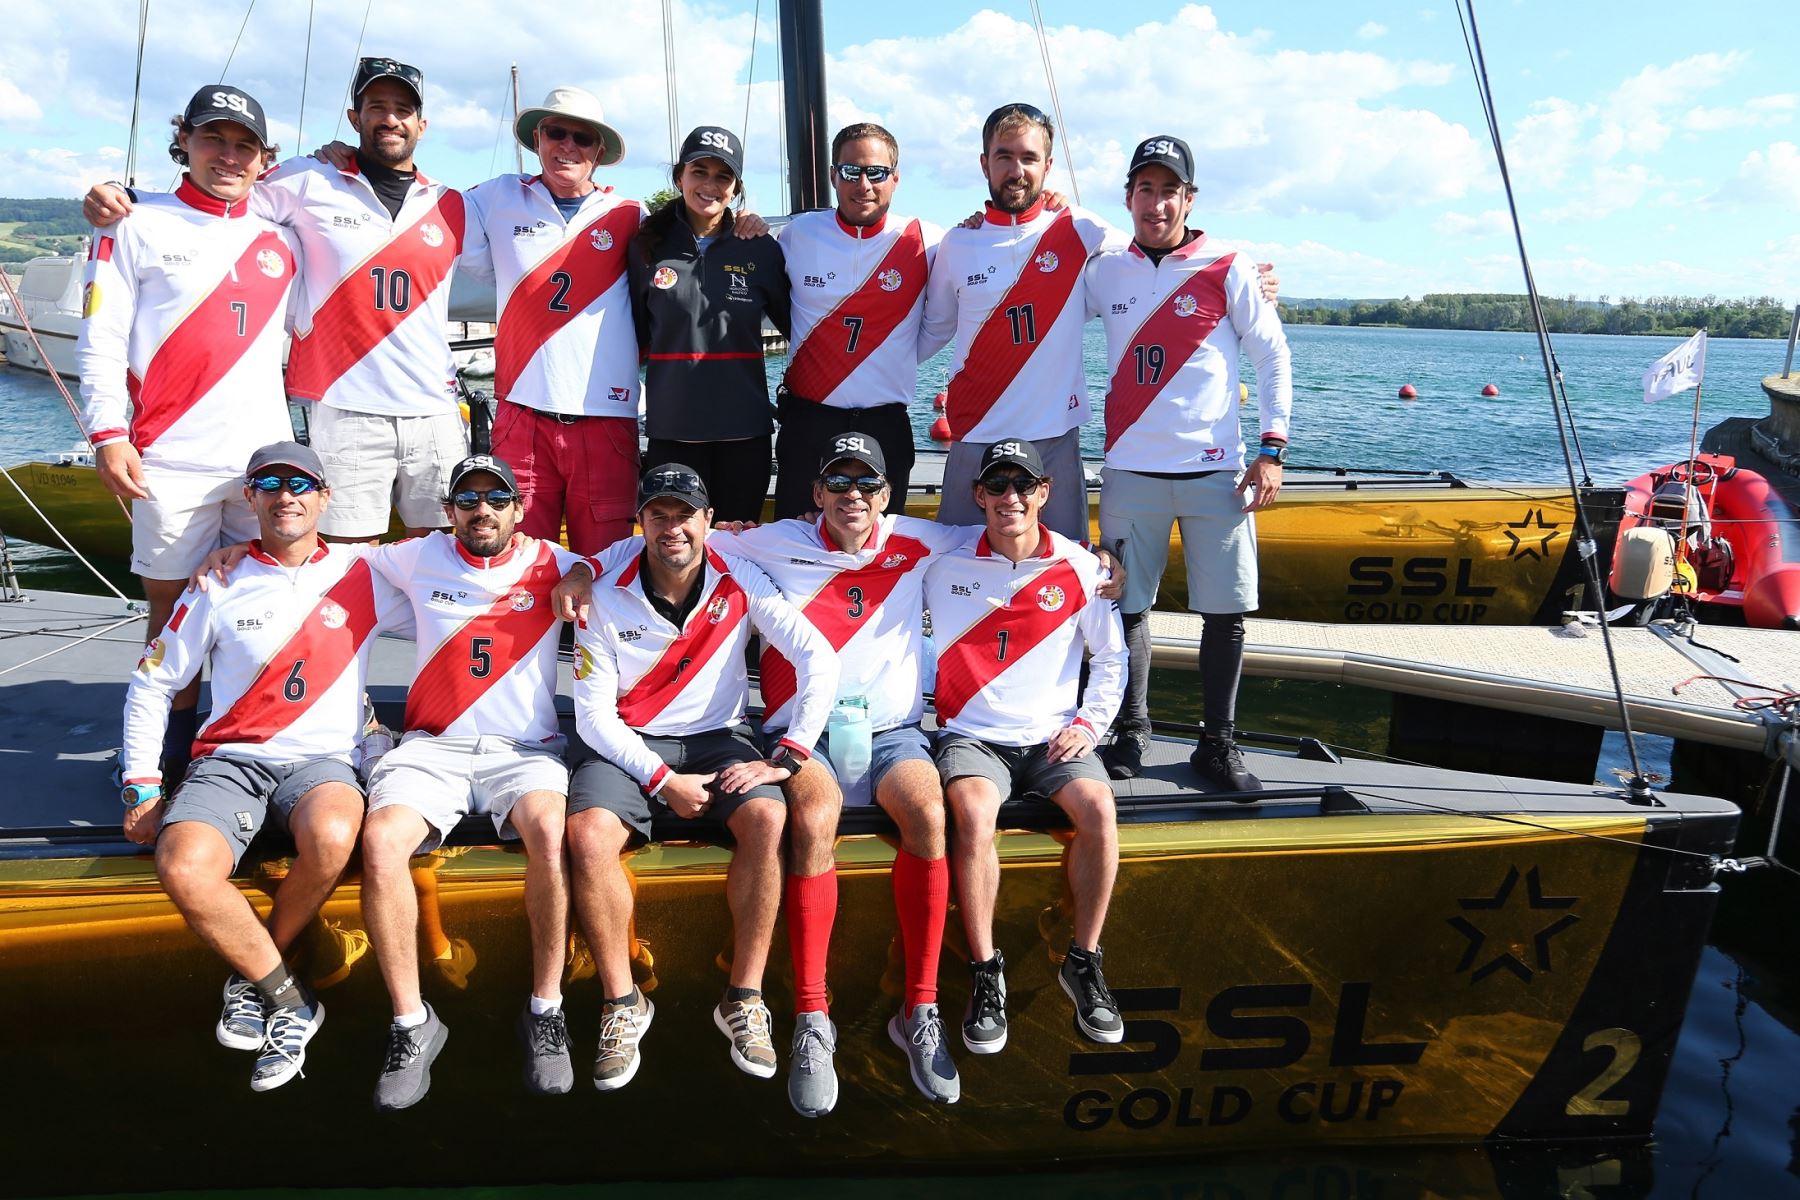 La selección peruana de vela se encuentra en la ciudad de Granson, en Suiza, para iniciar competencias en el Star Sailors League Gold Cup, que se desarrollará del 9 al 13 de junio en el lago de Neuchatel.